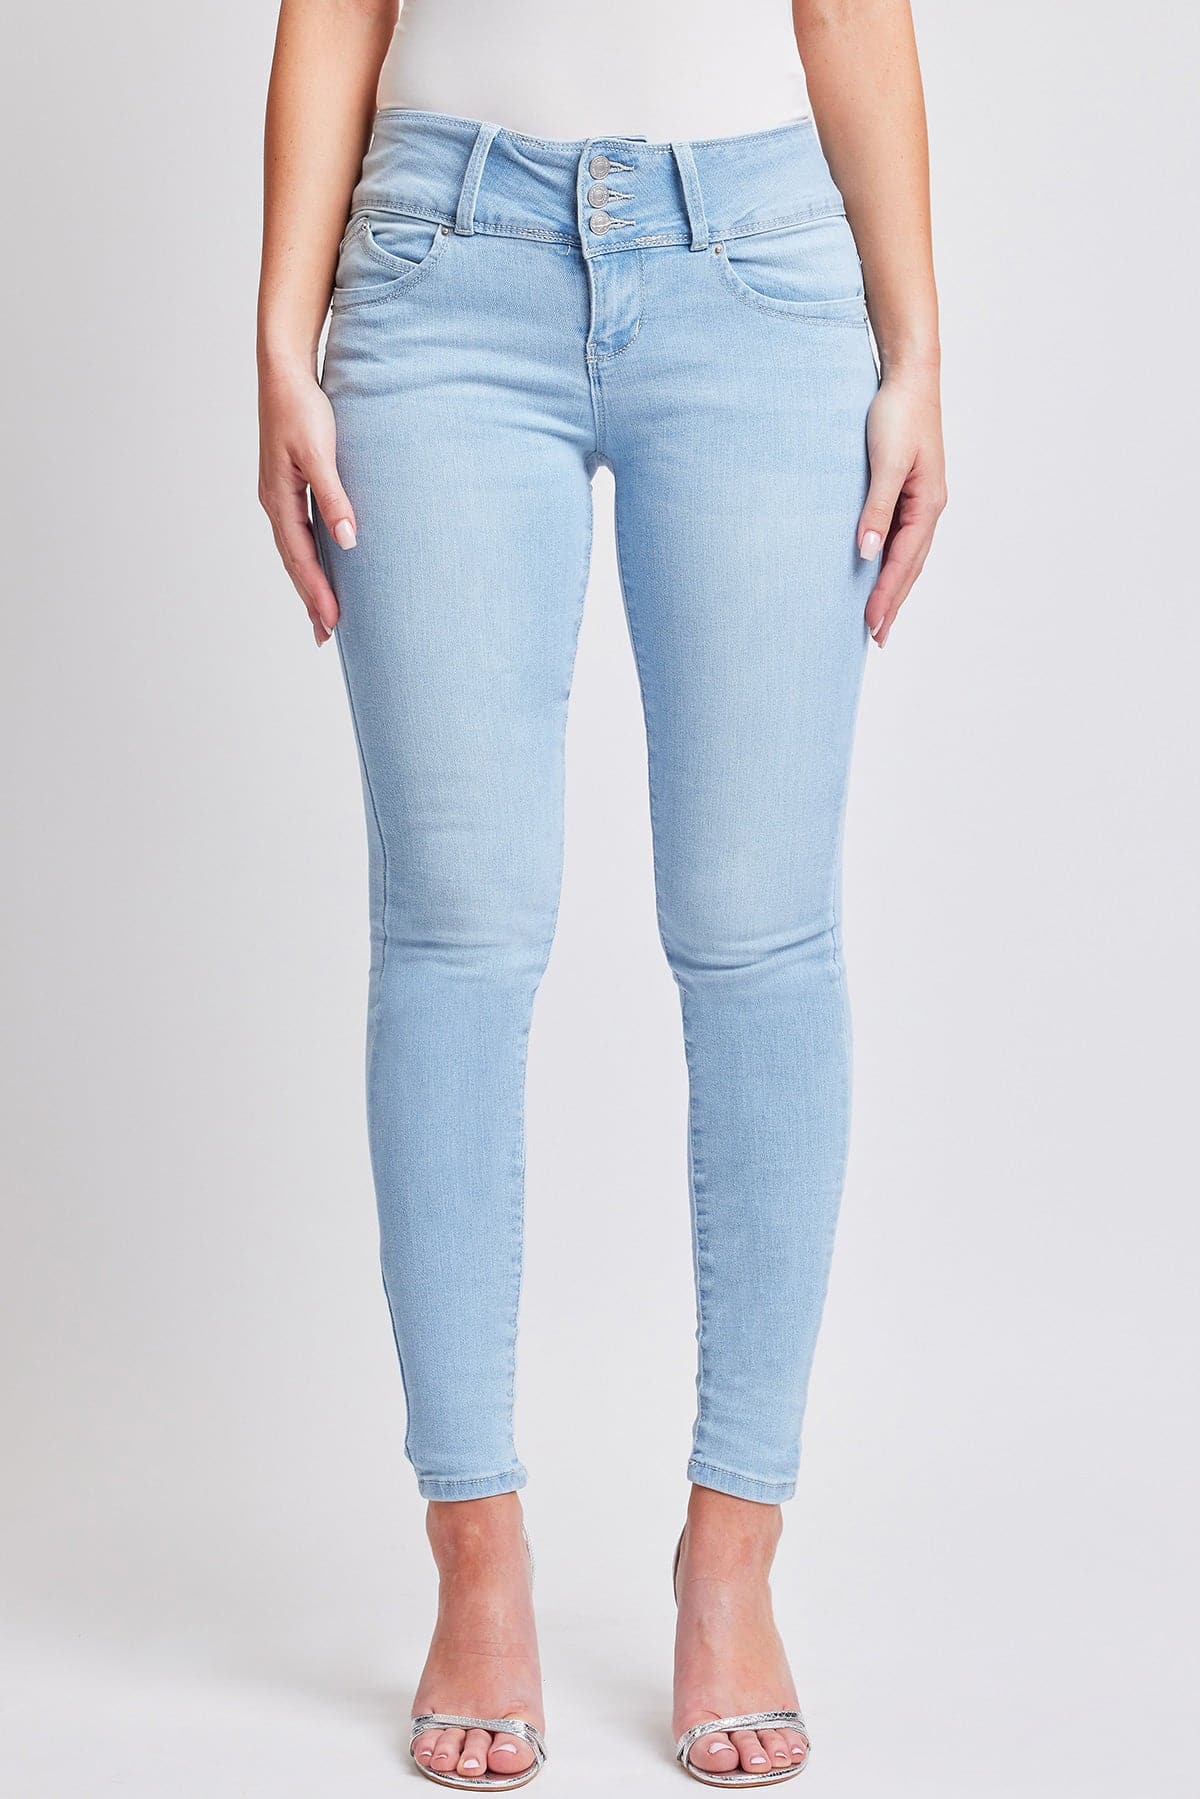 Women's Sustainable WannaBettaButt 3 Button Skinny Jeans